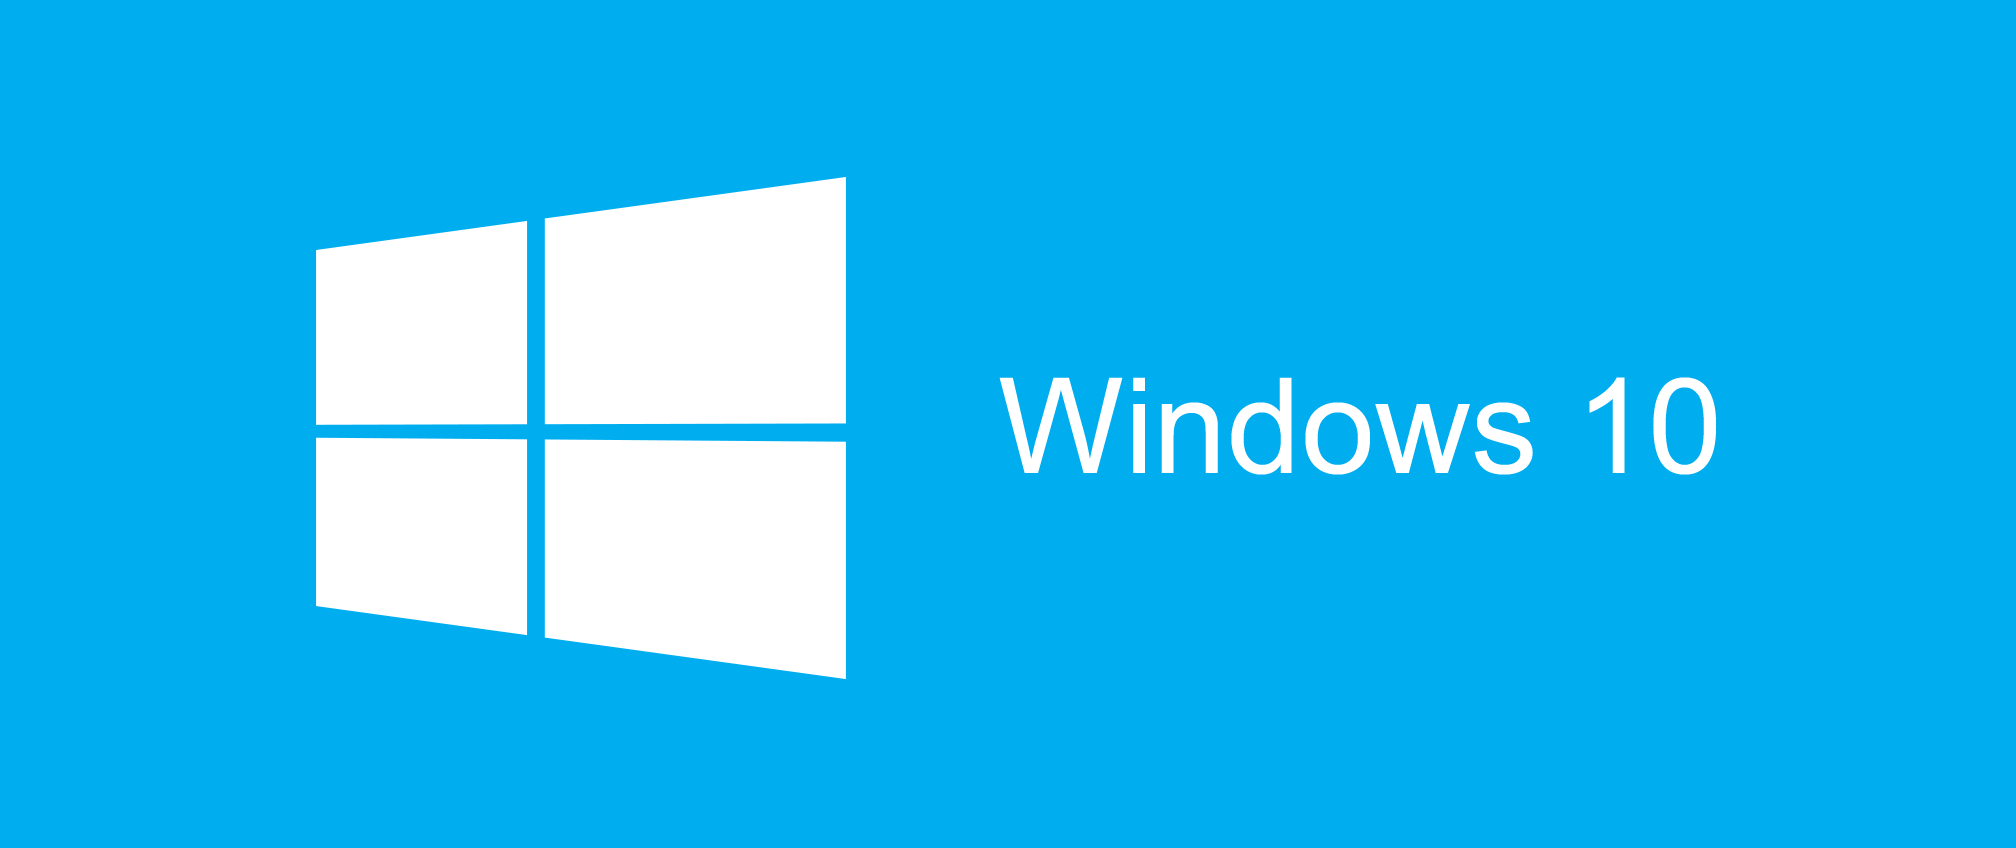 Переход на Windows 10 для пиратов будет бесплатен - фото 1